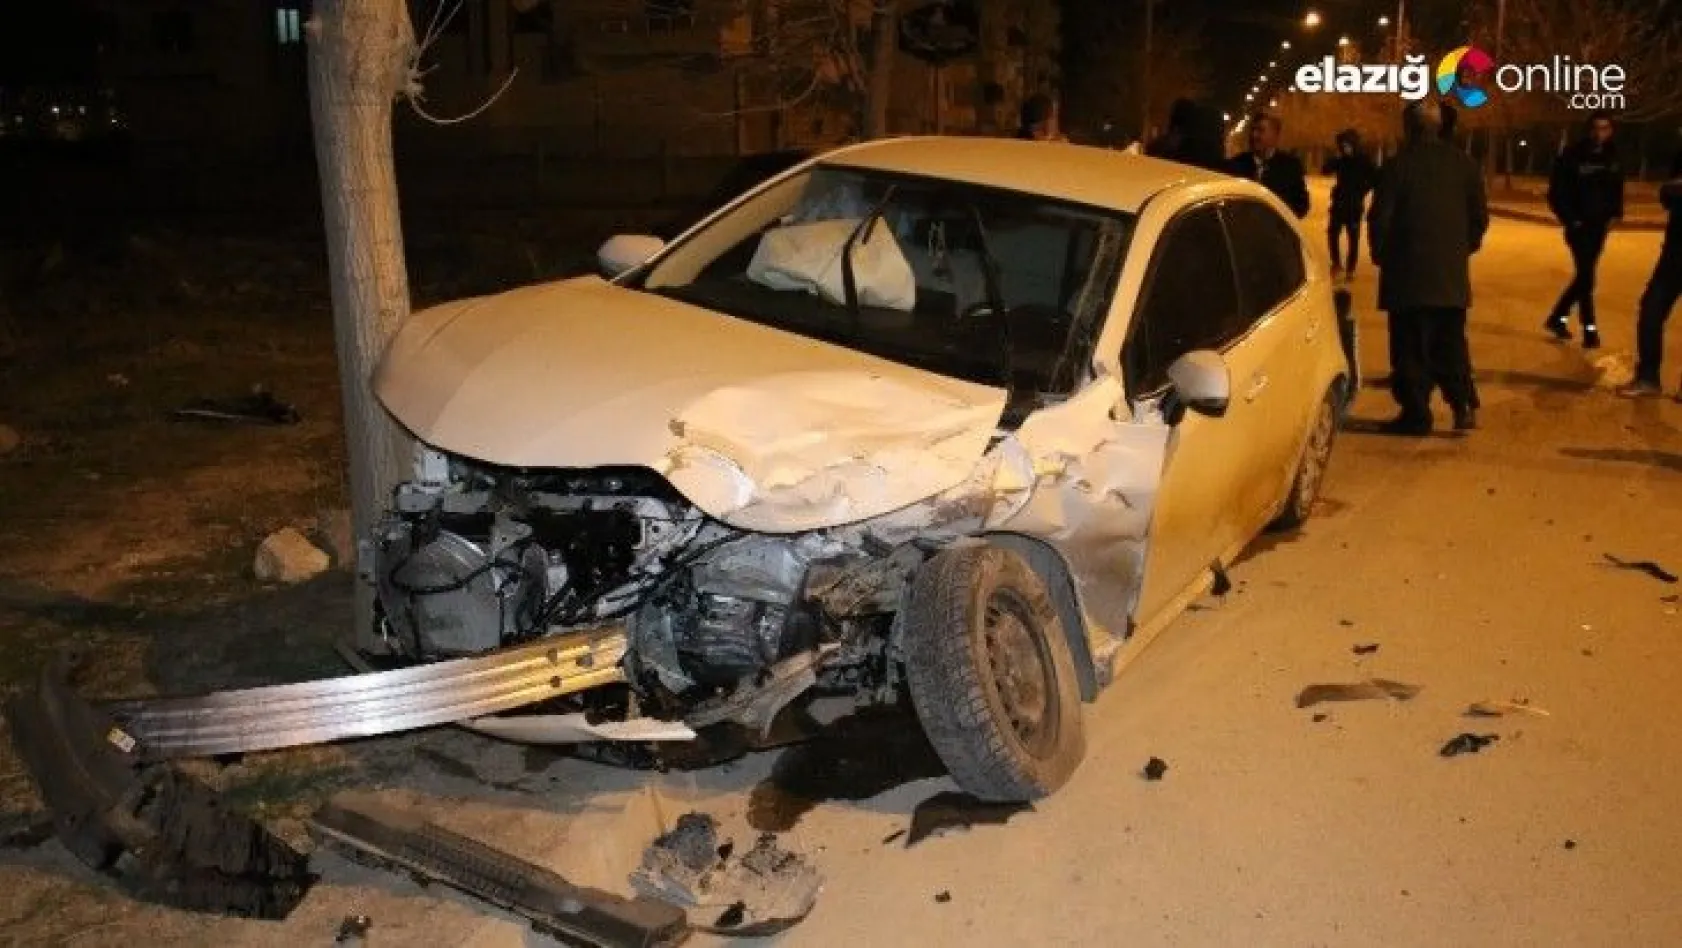 Elazığ'da minibüs ile otomobili çarpıştı: 5 yaralı